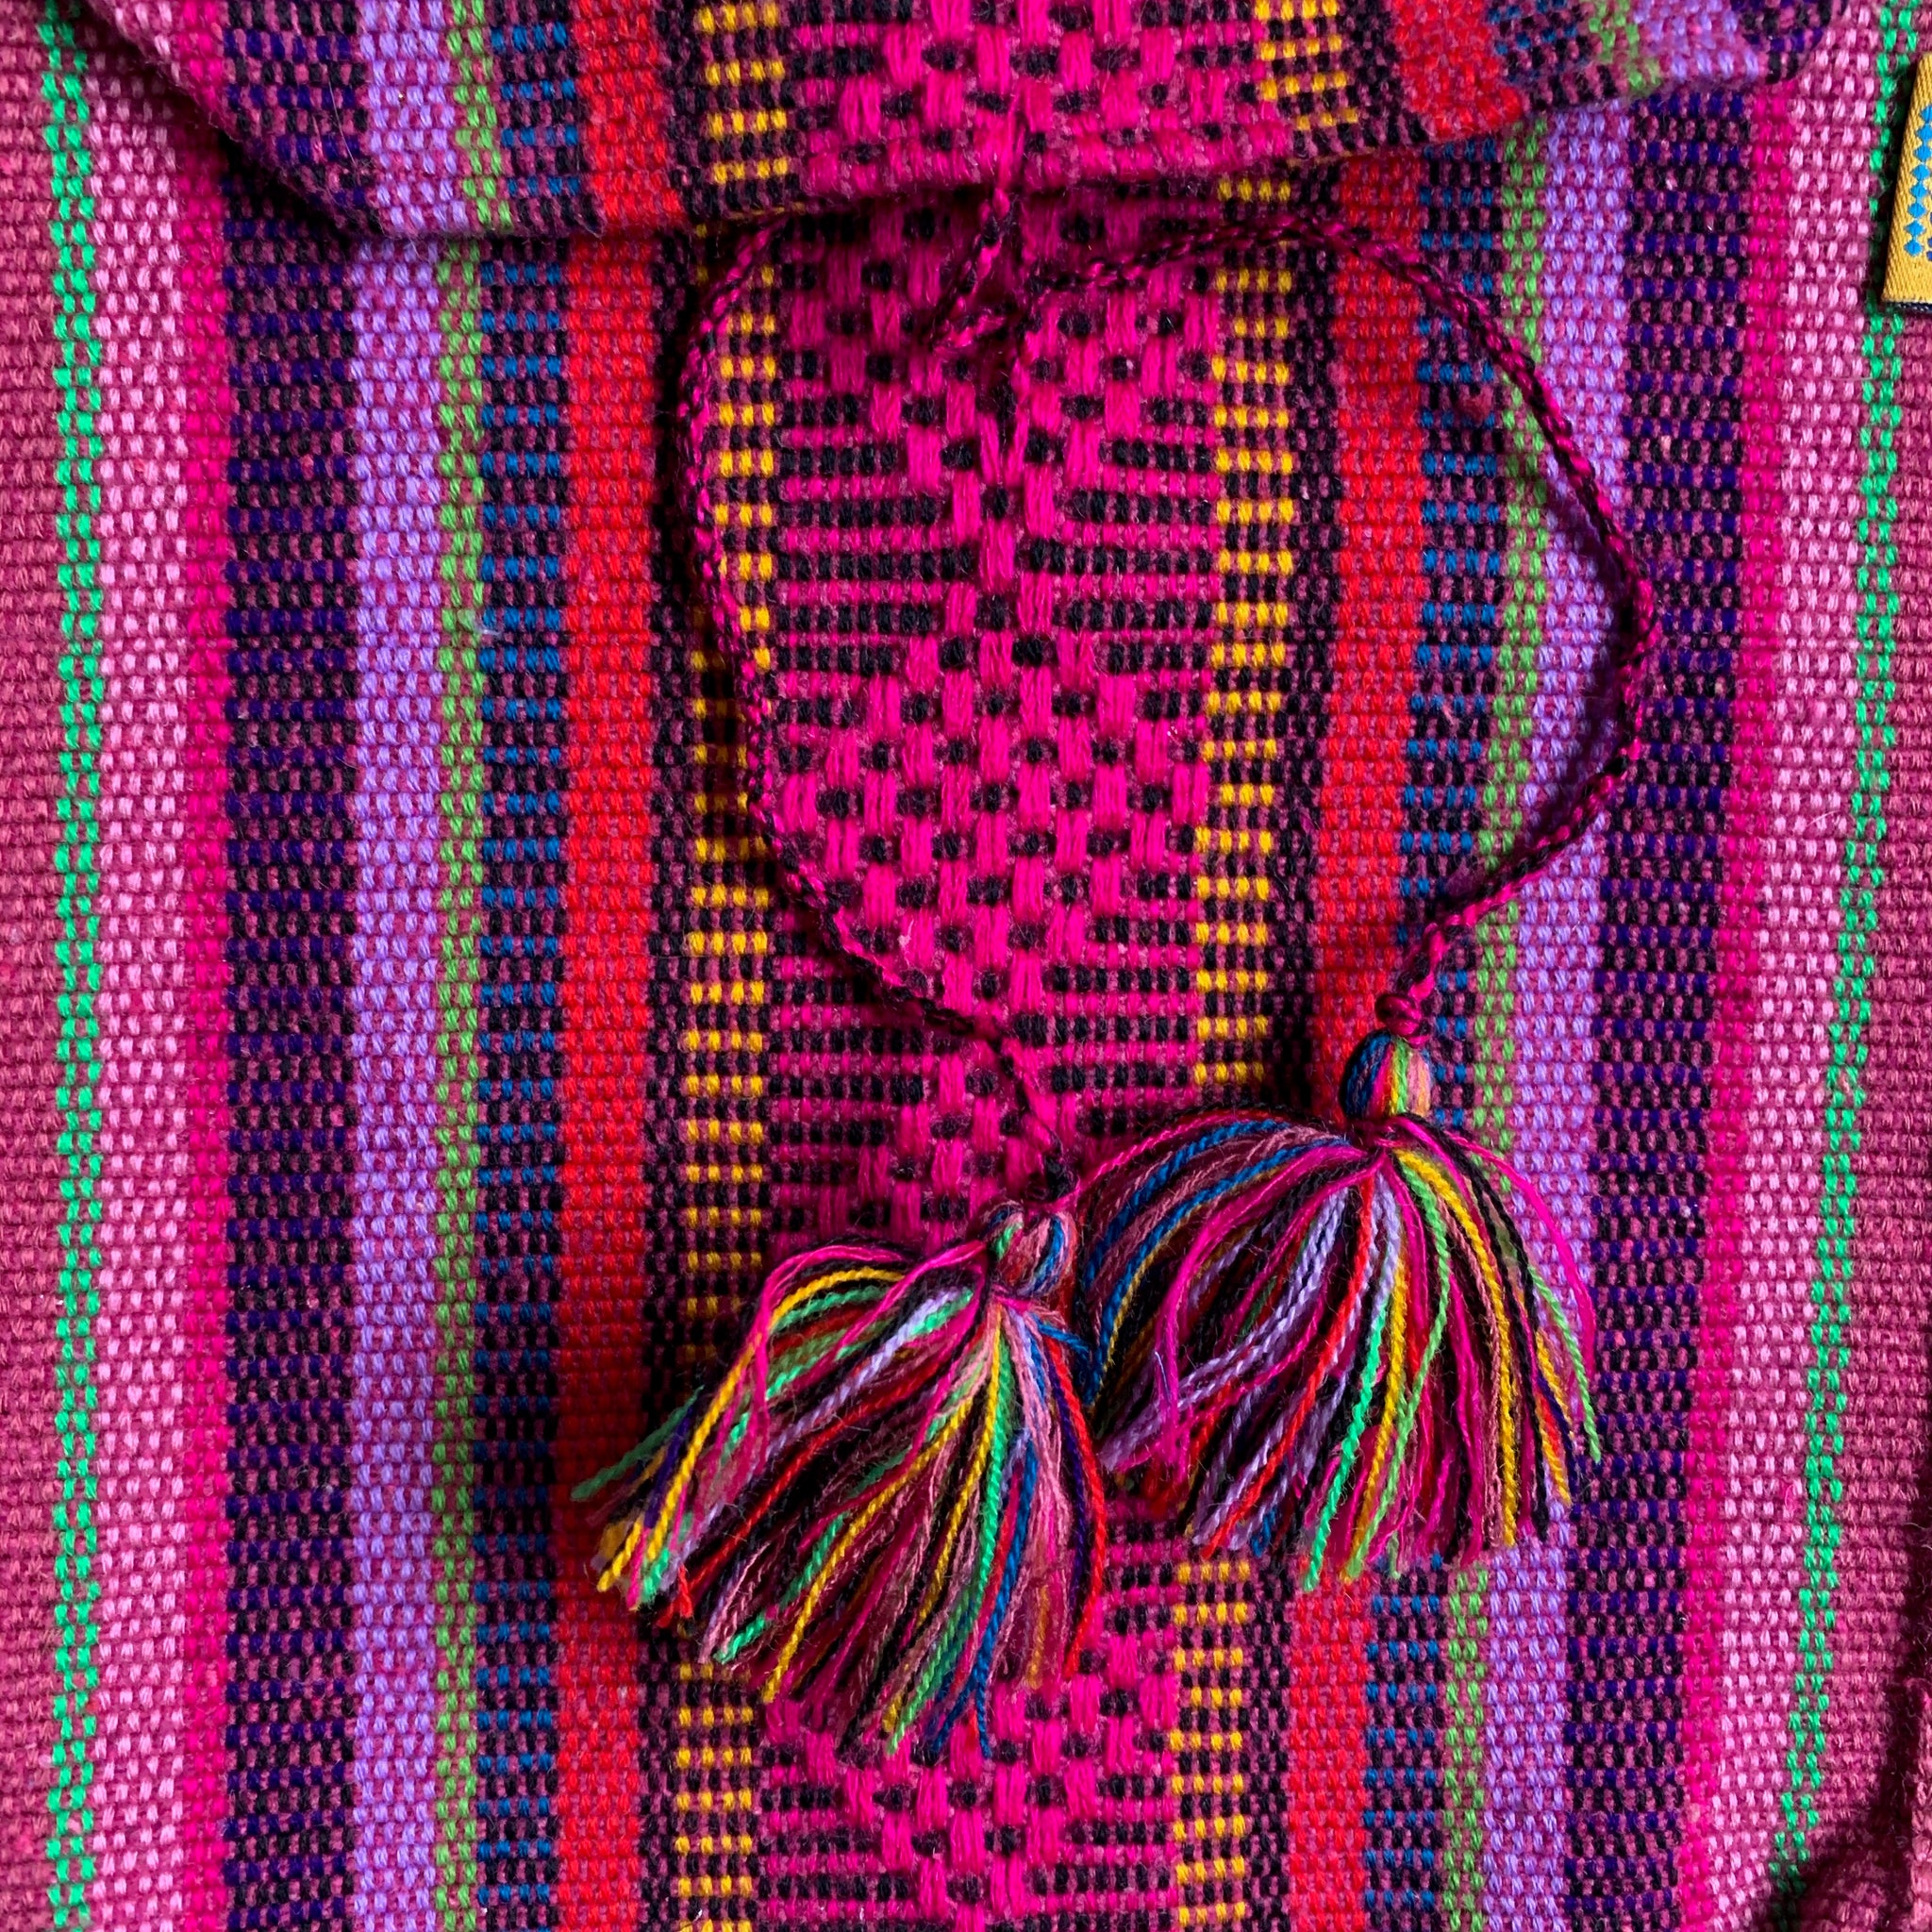 Handmade cross body bags from Oaxaca